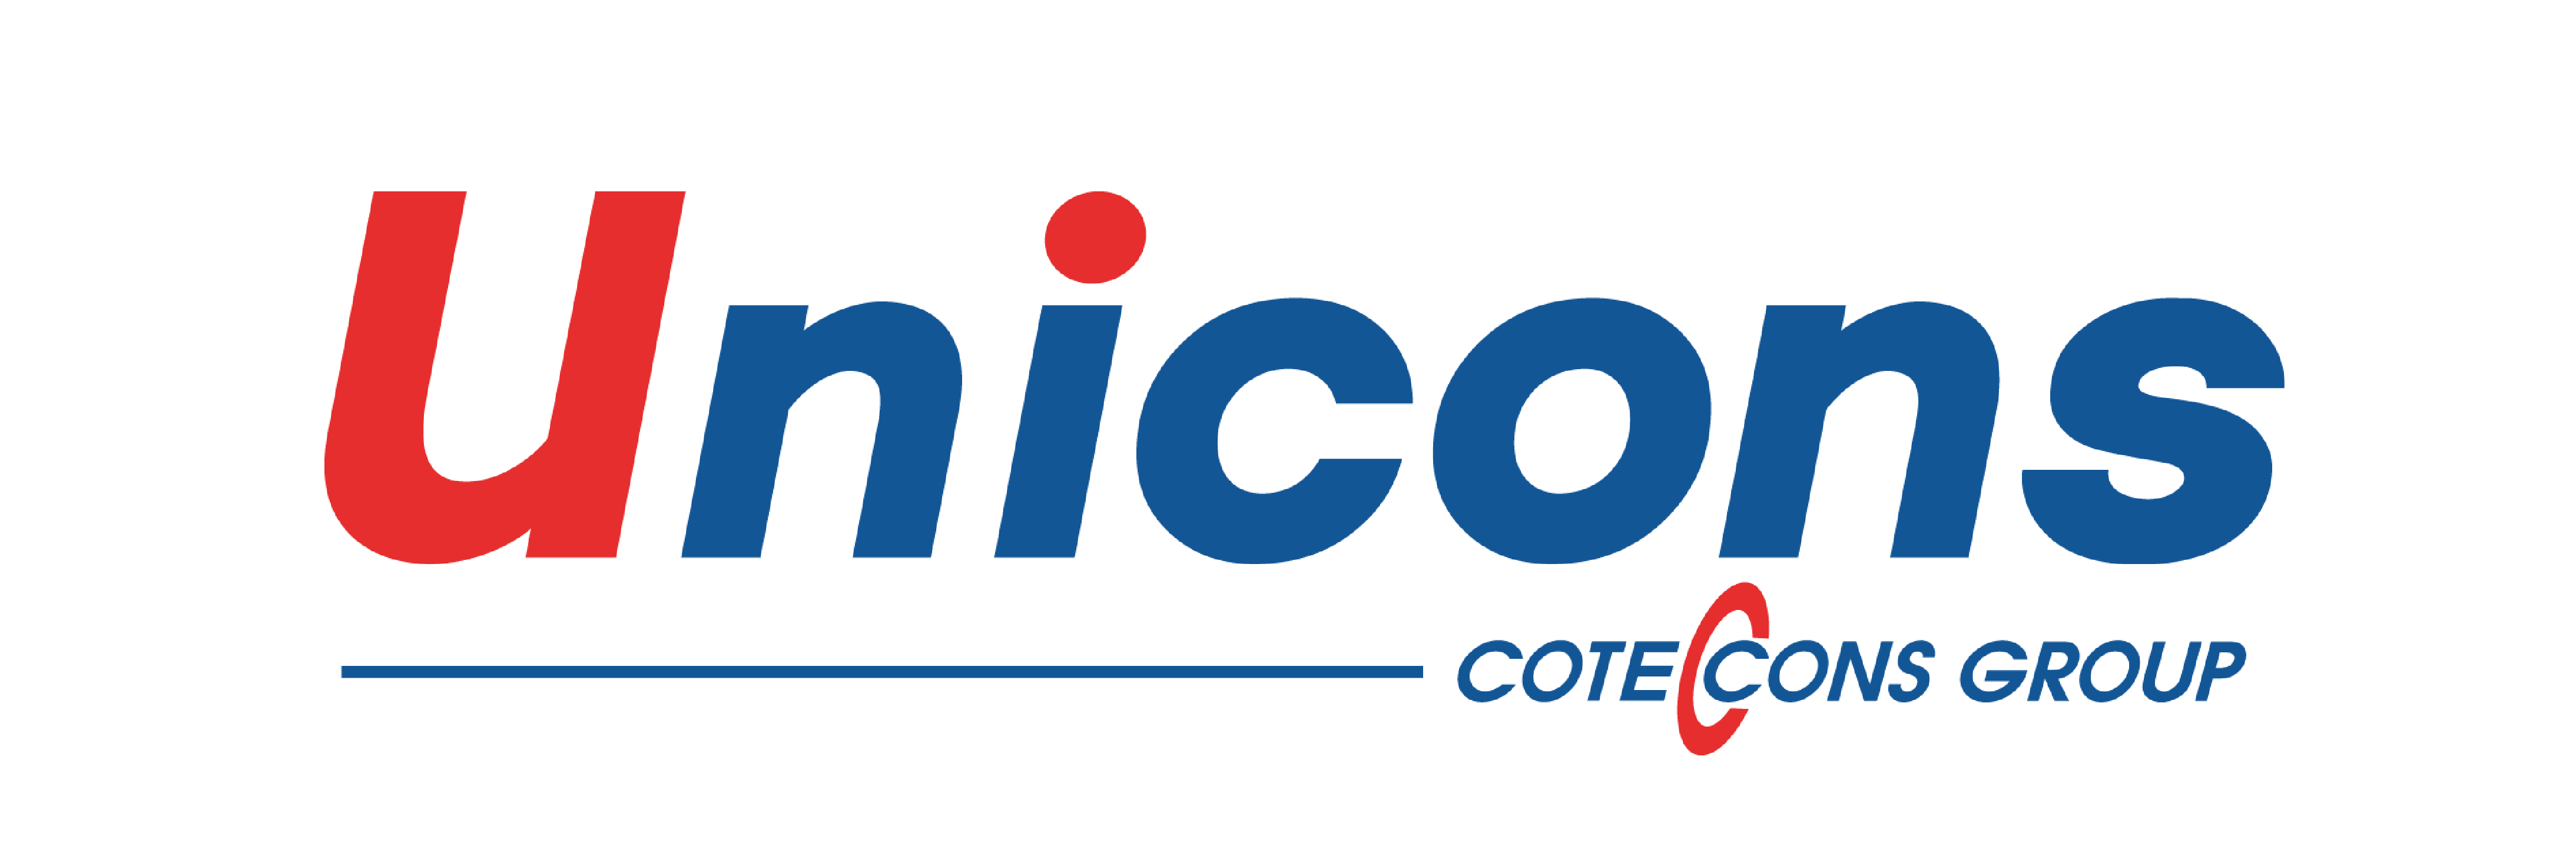 Unicons – thành viên của Coteccons Group – là một trong những công ty xây dựng tư nhân hàng đầu Việt Nam với doanh thu vượt mốc 8.400 tỷ đồng tính đến cuối năm 2018.  Được thành lập từ năm 2006, Unicons đã và đang phát triển nhanh chóng, thuộc tốp 3 các Tổng thầu xây dựng tư nhân lớn nhất Việt Nam. Năm 2018, Unicons vượt mốc tổng doanh thu 8.400 tỷ đồng, lợi nhuận sau thuế đạt hơn 360 tỷ đồng. Với thành quả đáng tự hào đó, Unicons tự hào với vị trí tốp 3 công ty xây dựng tư nhân số 1 Việt Nam, xếp hạng 71/500 doanh nghiệp tư nhân lớn nhất Việt Nam (theo bảng xếp hạng VNR500 năm 2018 do Vietnam Report và báo điện tử Vietnamnet đồng thực hiện và công bố). Để đạt được những thành tựu trên, ngoài sự hỗ trợ và tạo điều kiện từ phía Coteccons Group còn có sự nỗ lực bằng chính kinh nghiệm và giá trị cốt lõi bản thân chúng tôi. Là một Tổng Thầu, chúng tôi hoạt động đa dạng trên thị trường xây dựng với đầy đủ các dịch vụ như Thiết kế và Thi công, Tổng thầu xây dựng và Thi công cơ điện. Ba nhân tố chính  Con người, Hệ thống quản lý và Văn hóa doanh nghiệp được phản ánh qua 6 giá trị cốt lõi chính là nền tảng vững chắc của cho sự phát triển và thành công của Unicons. Dựa trên nền tảng này, chúng tôi tự tin mang lại cho khách hàng những dịch vụ đảm bảo an toàn, chuyên nghiệp, chất lượng tiêu chuẩn quốc tế và rất cạnh tranh về ngân sách.Để cam kết duy trì chất lượng đẳng cấp quốc tế, chúng tôi liên tục cải tiến Hệ thống Quản lý Chất lượng và Hệ thống Quản lý An toàn và Sức khoẻ nghề nghiệp. Số liệu minh chứng  Quý vị đã lựa chọn được đúng nhà thầu? Nếu quý vị đang tìm kiếm một Nhà thầu uy tín, hãy tham khảo hồ sơ năng lực của chúng tôi. Hồ sơ chứng minh năng lực của chúng tôi thể hiện một cách đầy đủ những số liệu tài chính, năng lực và kinh nghiệm hợp tác với các Chủ đầu tư, Công ty tư vấn và các Đối tác danh tiếng trong và ngoài nước.